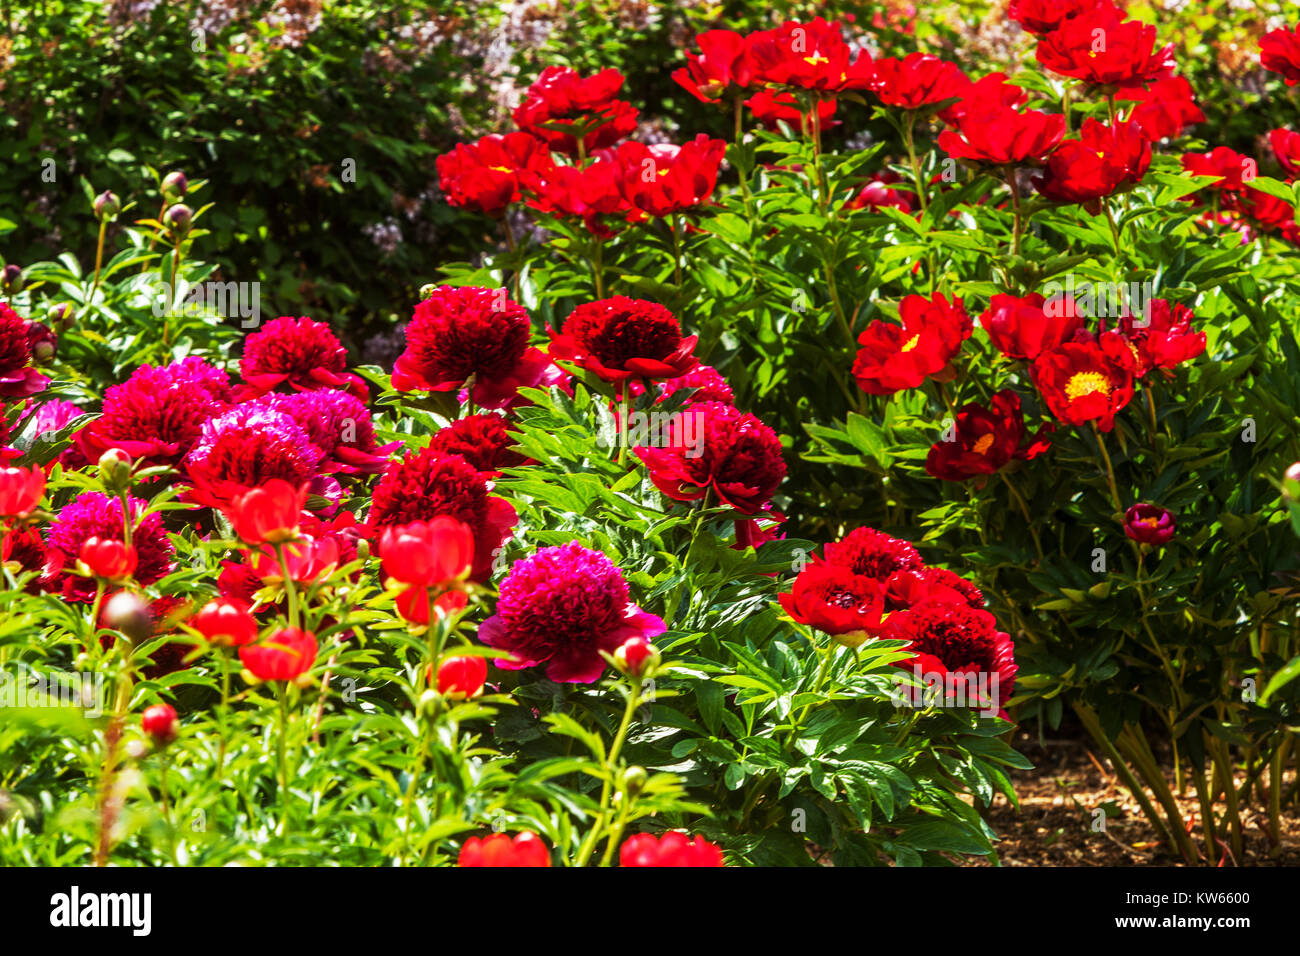 Jardin de pivoines rouge, pivoine, Paeonia lactiflora, beau jardin de fleurs Banque D'Images